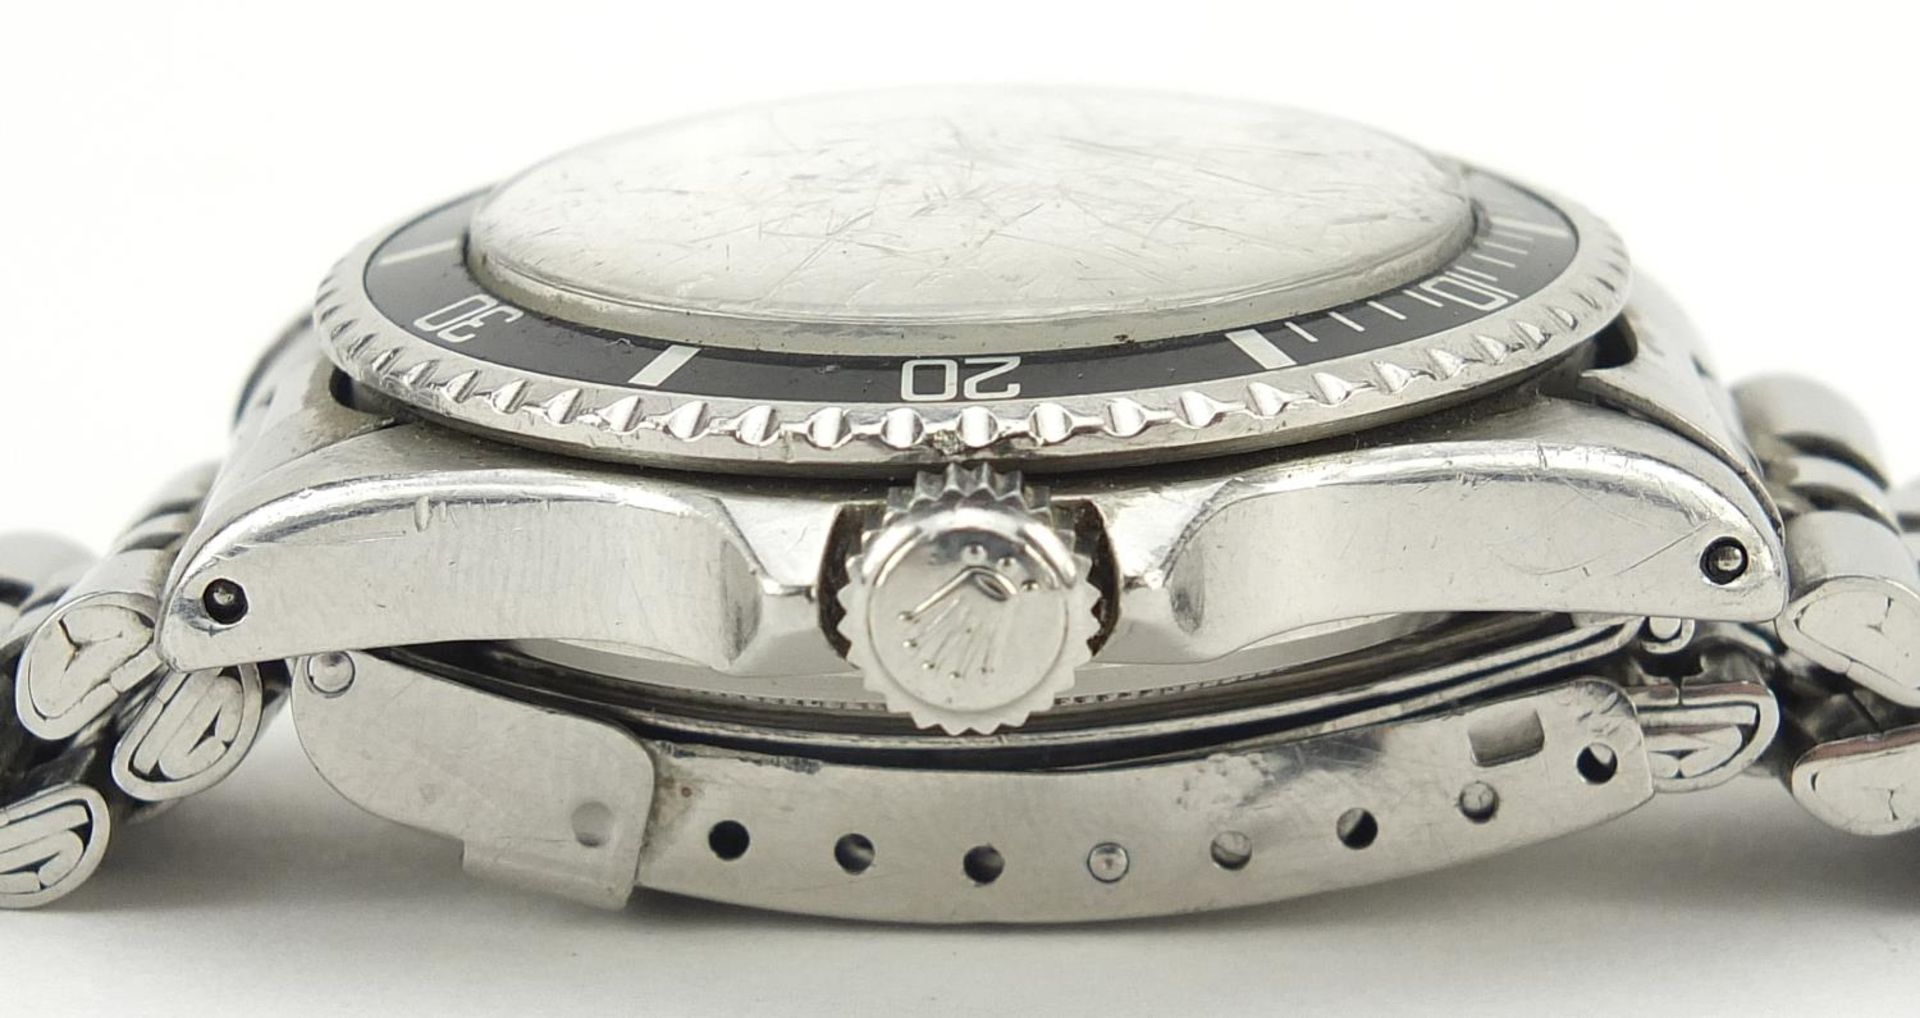 Rolex gentlemen's Submariner automatic wristwatch, ref 5513, serial number 1005684, 40mm in diameter - Bild 4 aus 9